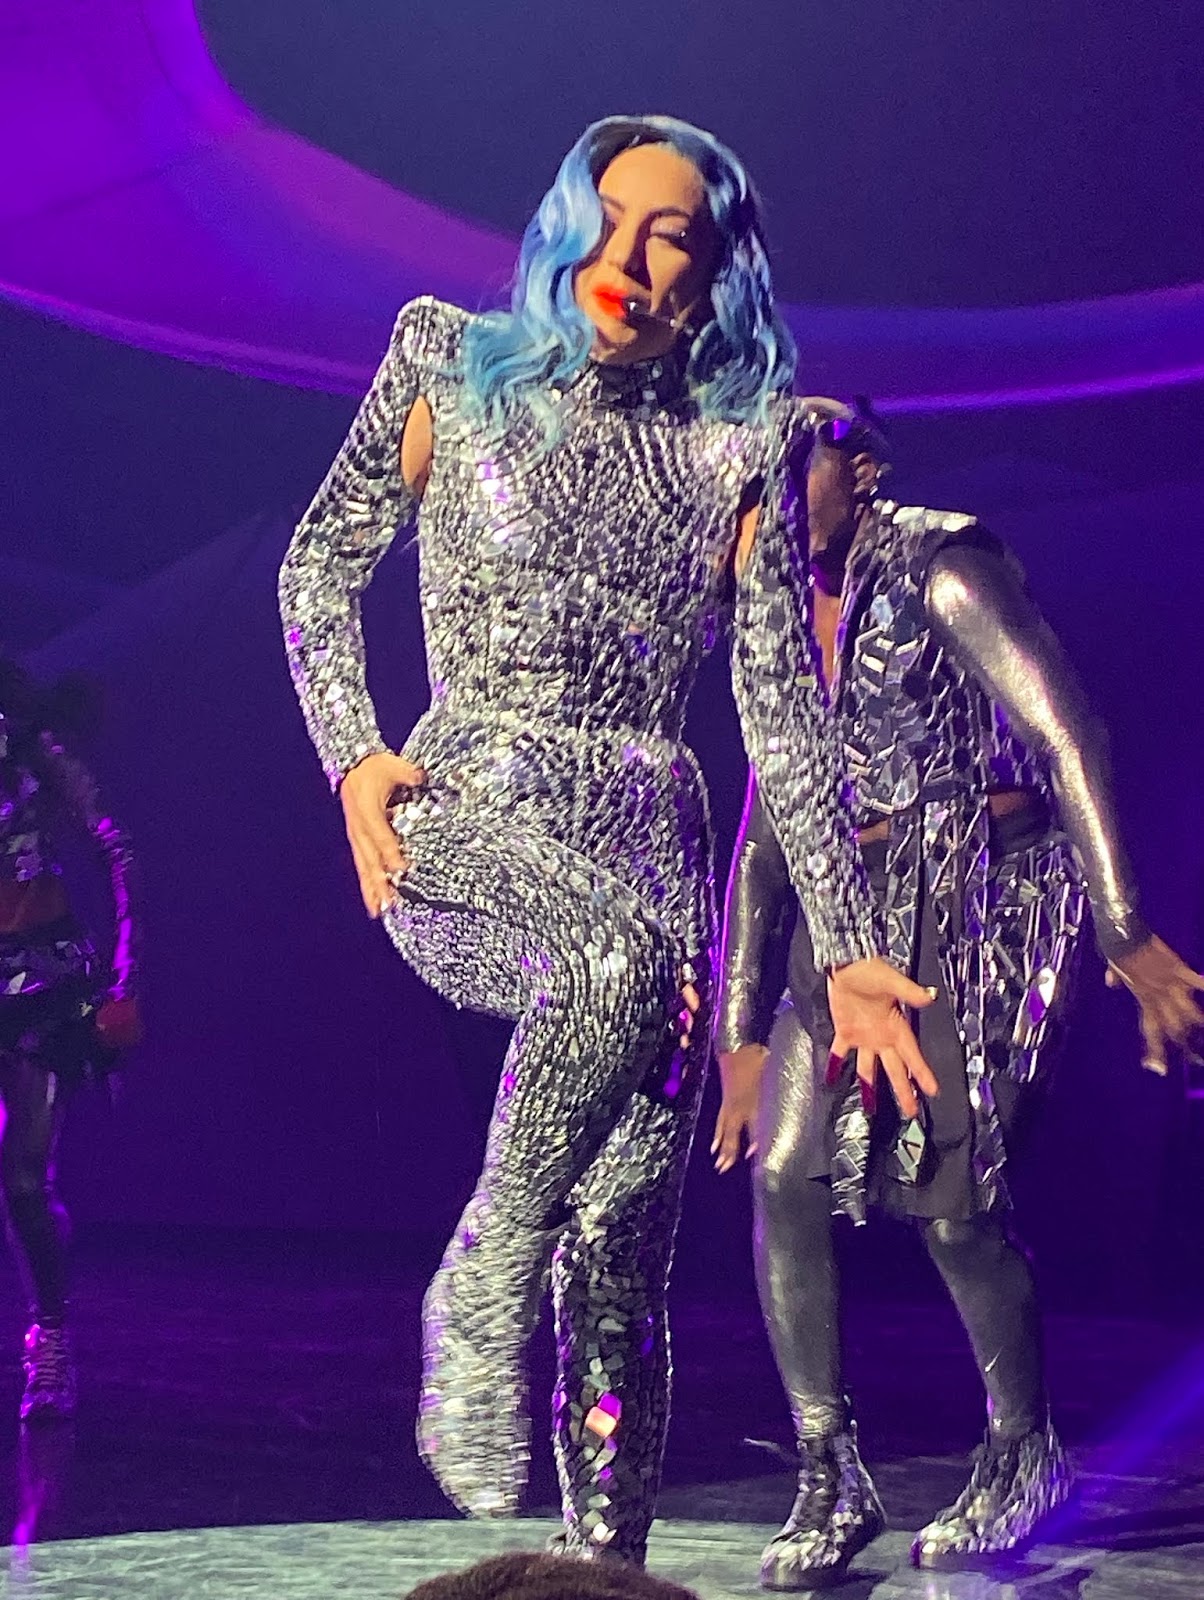 GAGAFRONTROW: Lady Gaga Enigma @ Park Theater, Las Vegas, November 8, 2019